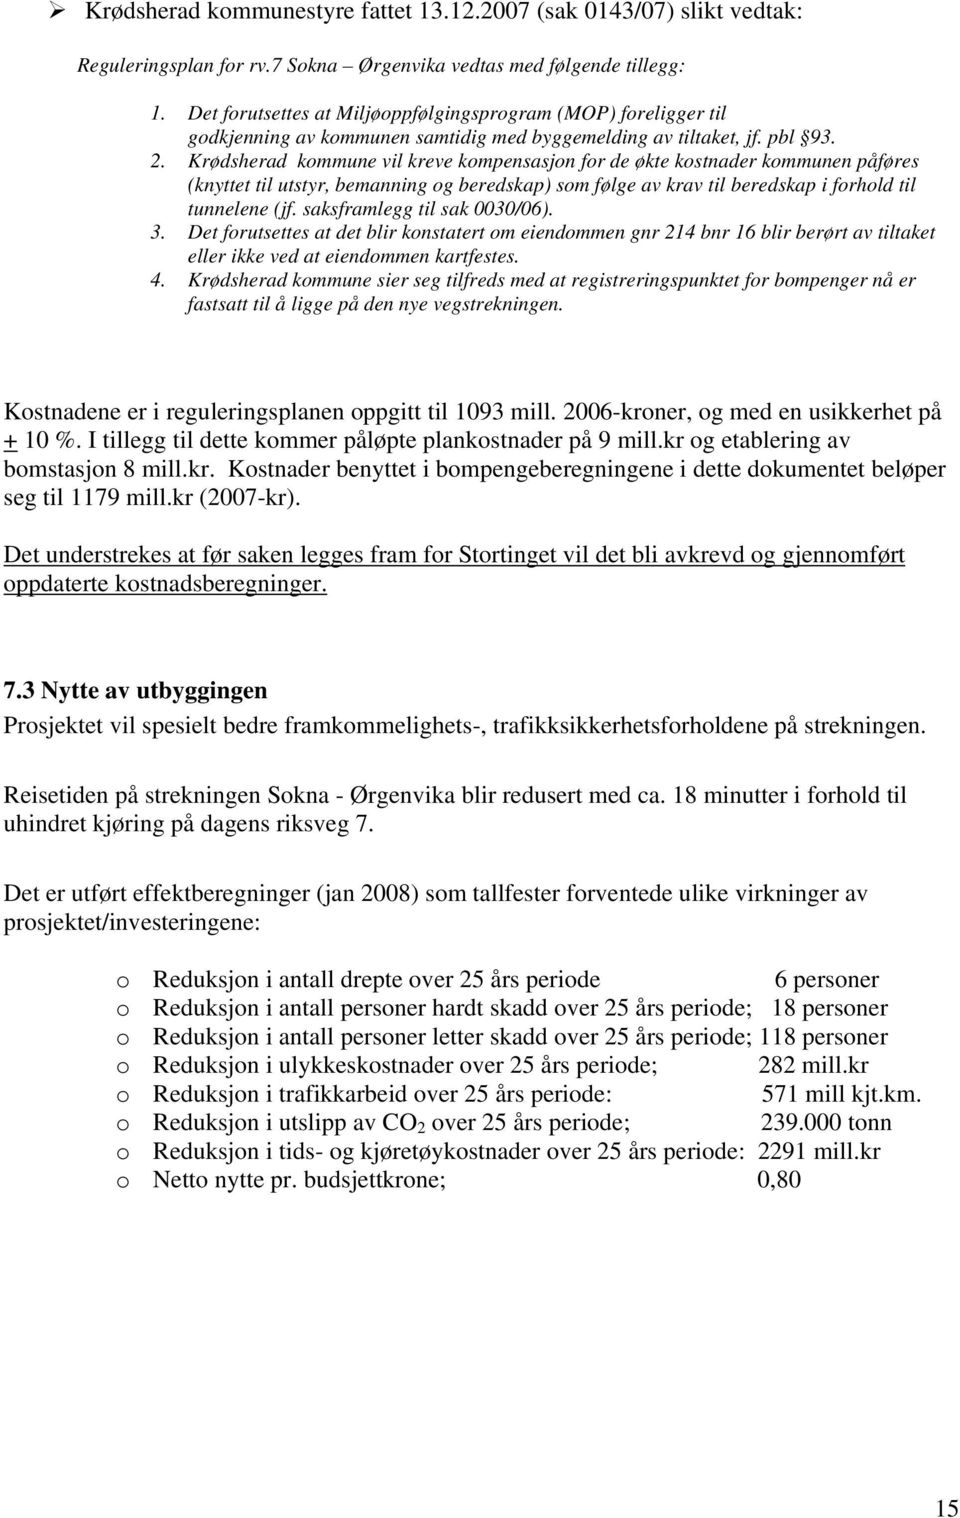 Krødsherad kommune vil kreve kompensasjon for de økte kostnader kommunen påføres (knyttet til utstyr, bemanning og beredskap) som følge av krav til beredskap i forhold til tunnelene (jf.